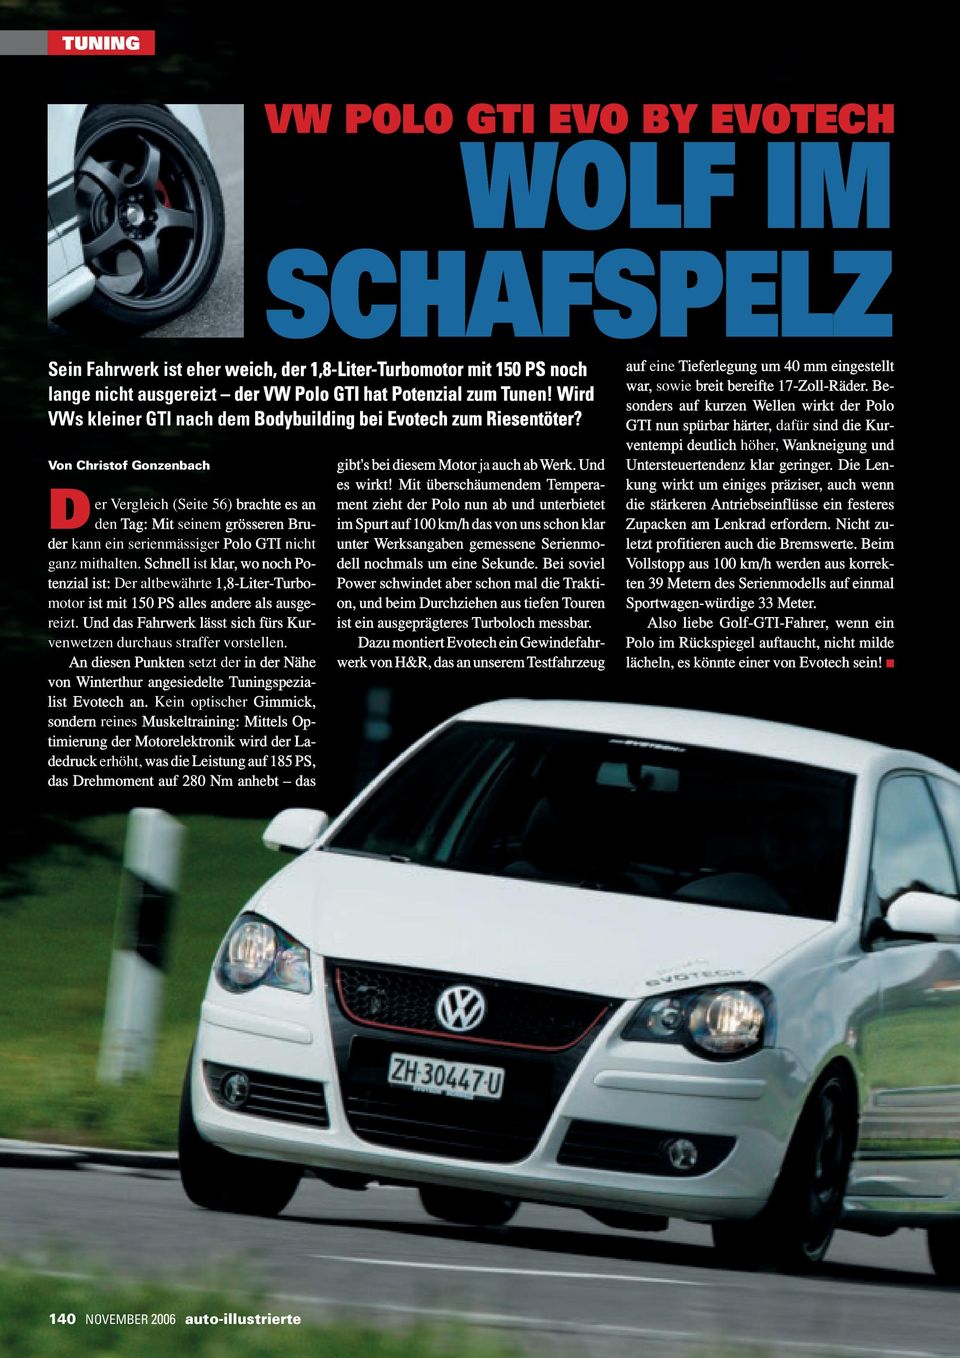 Von Christof Gonzenbach D er Vergleich (Seite 56) brachte es an den Tag: Mit seinem grösseren Bruder kann ein serienmässiger Polo GTI nicht ganz mithalten.